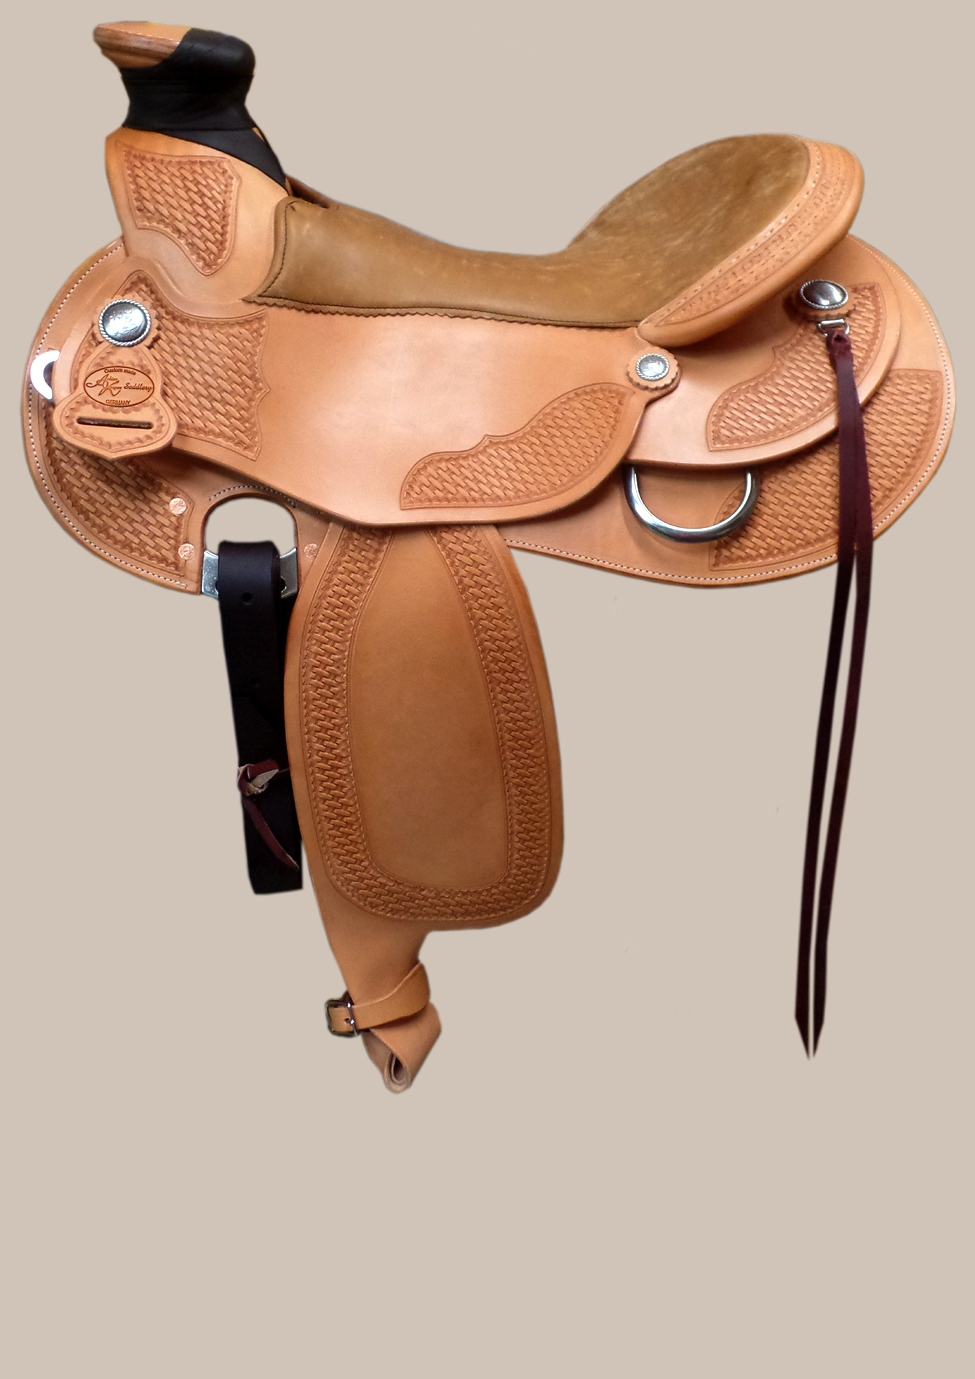 westernsattel custom made mit hornwrap